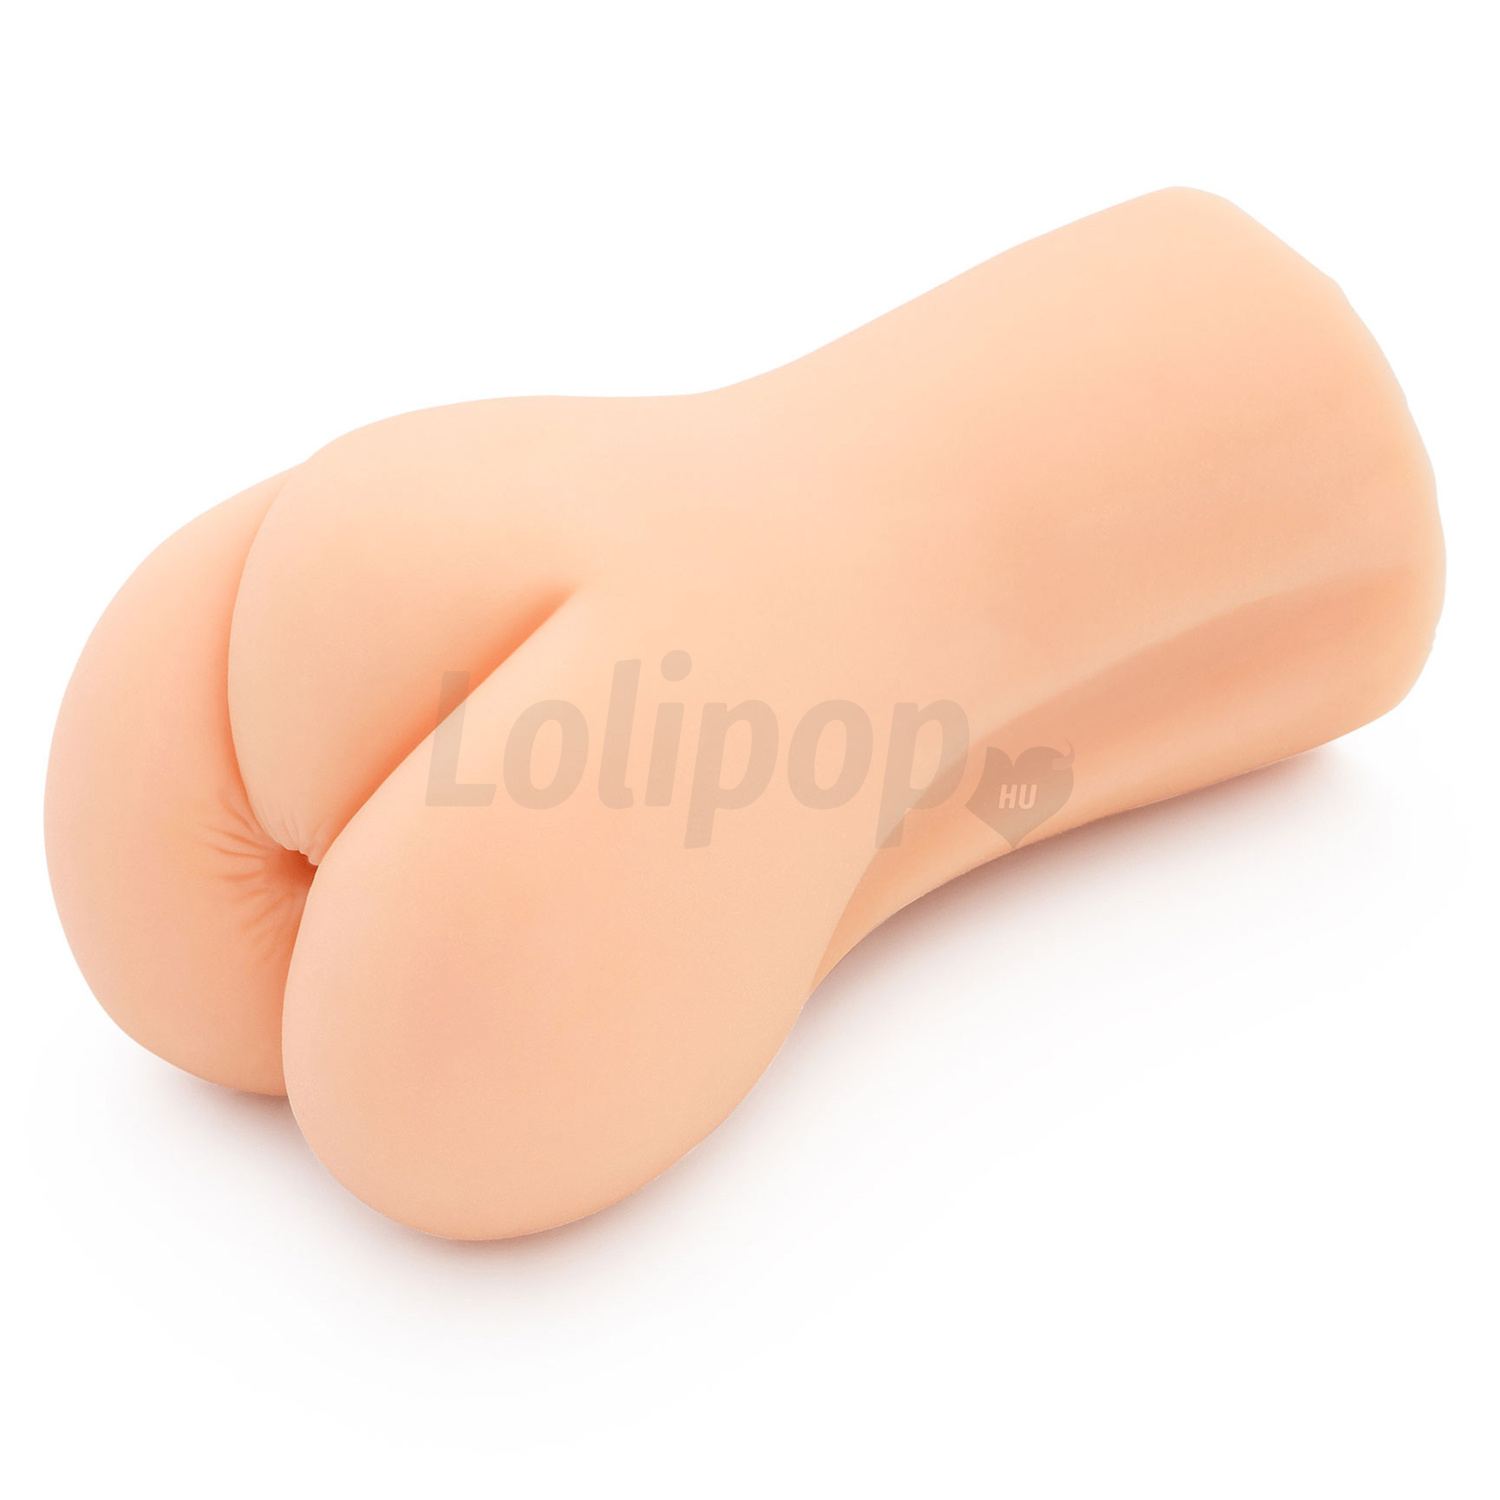 Bangers Super Wet Pocket Pussy testszínű vagina